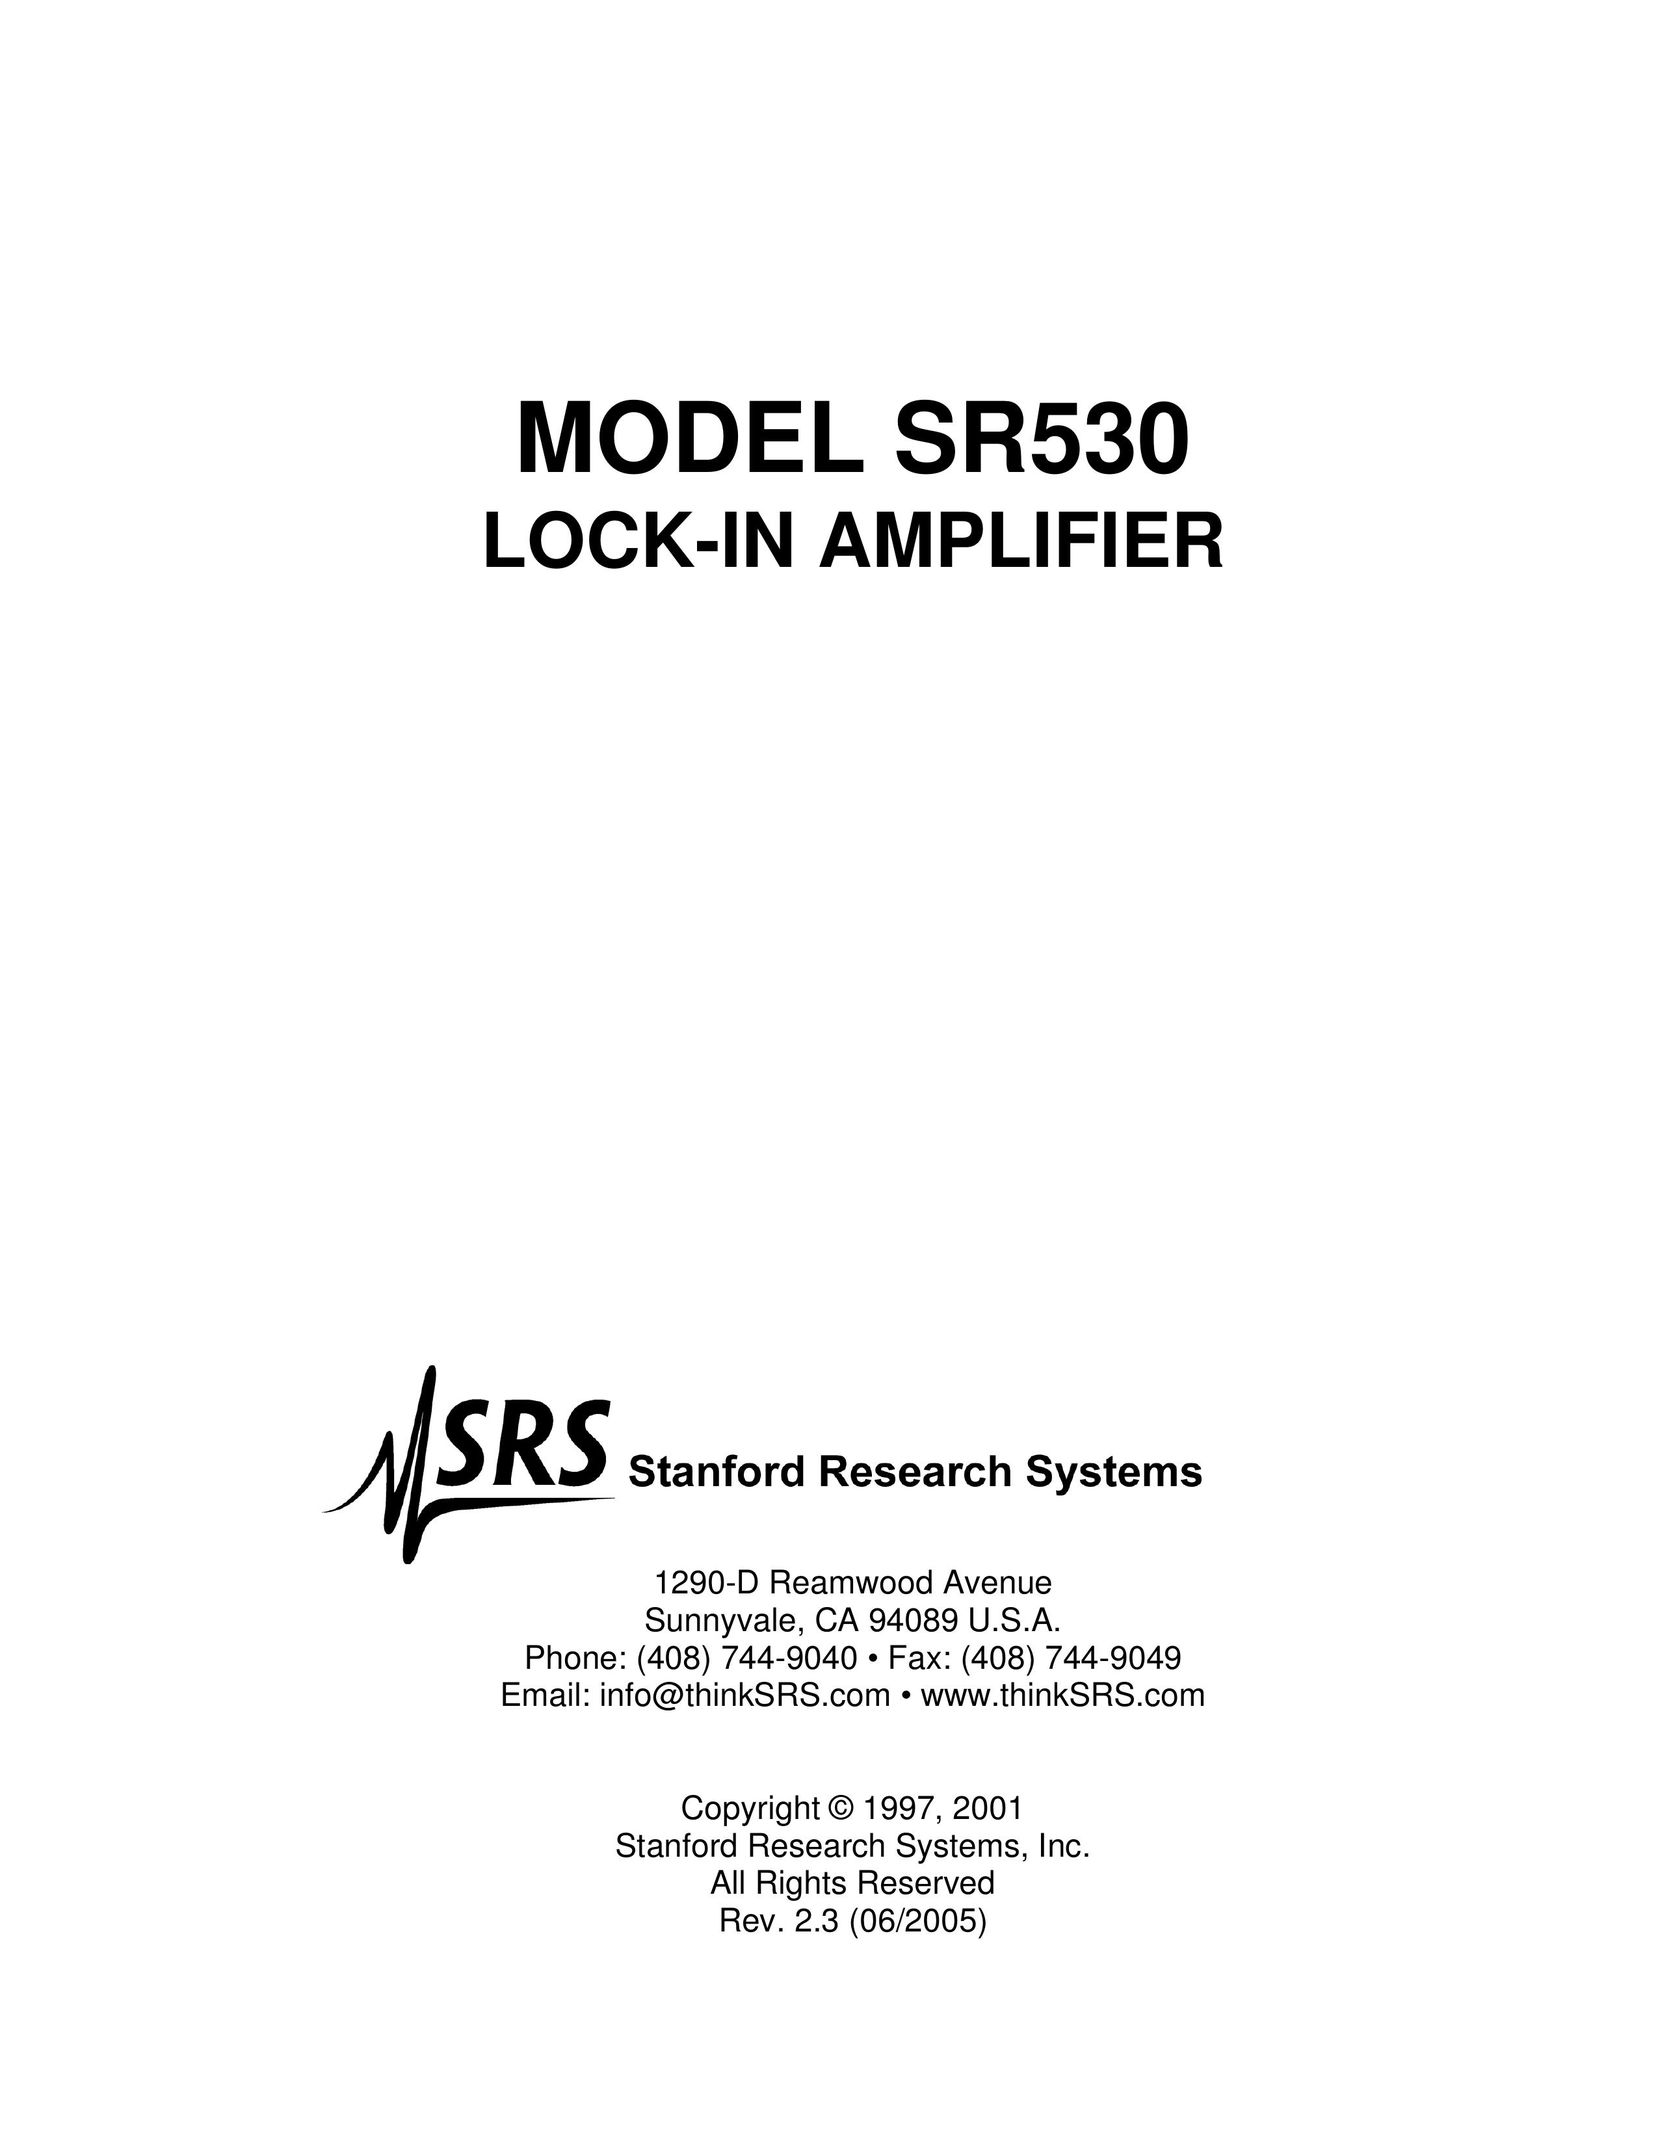 SRS Labs Lock-In Amplifier Stereo Amplifier User Manual